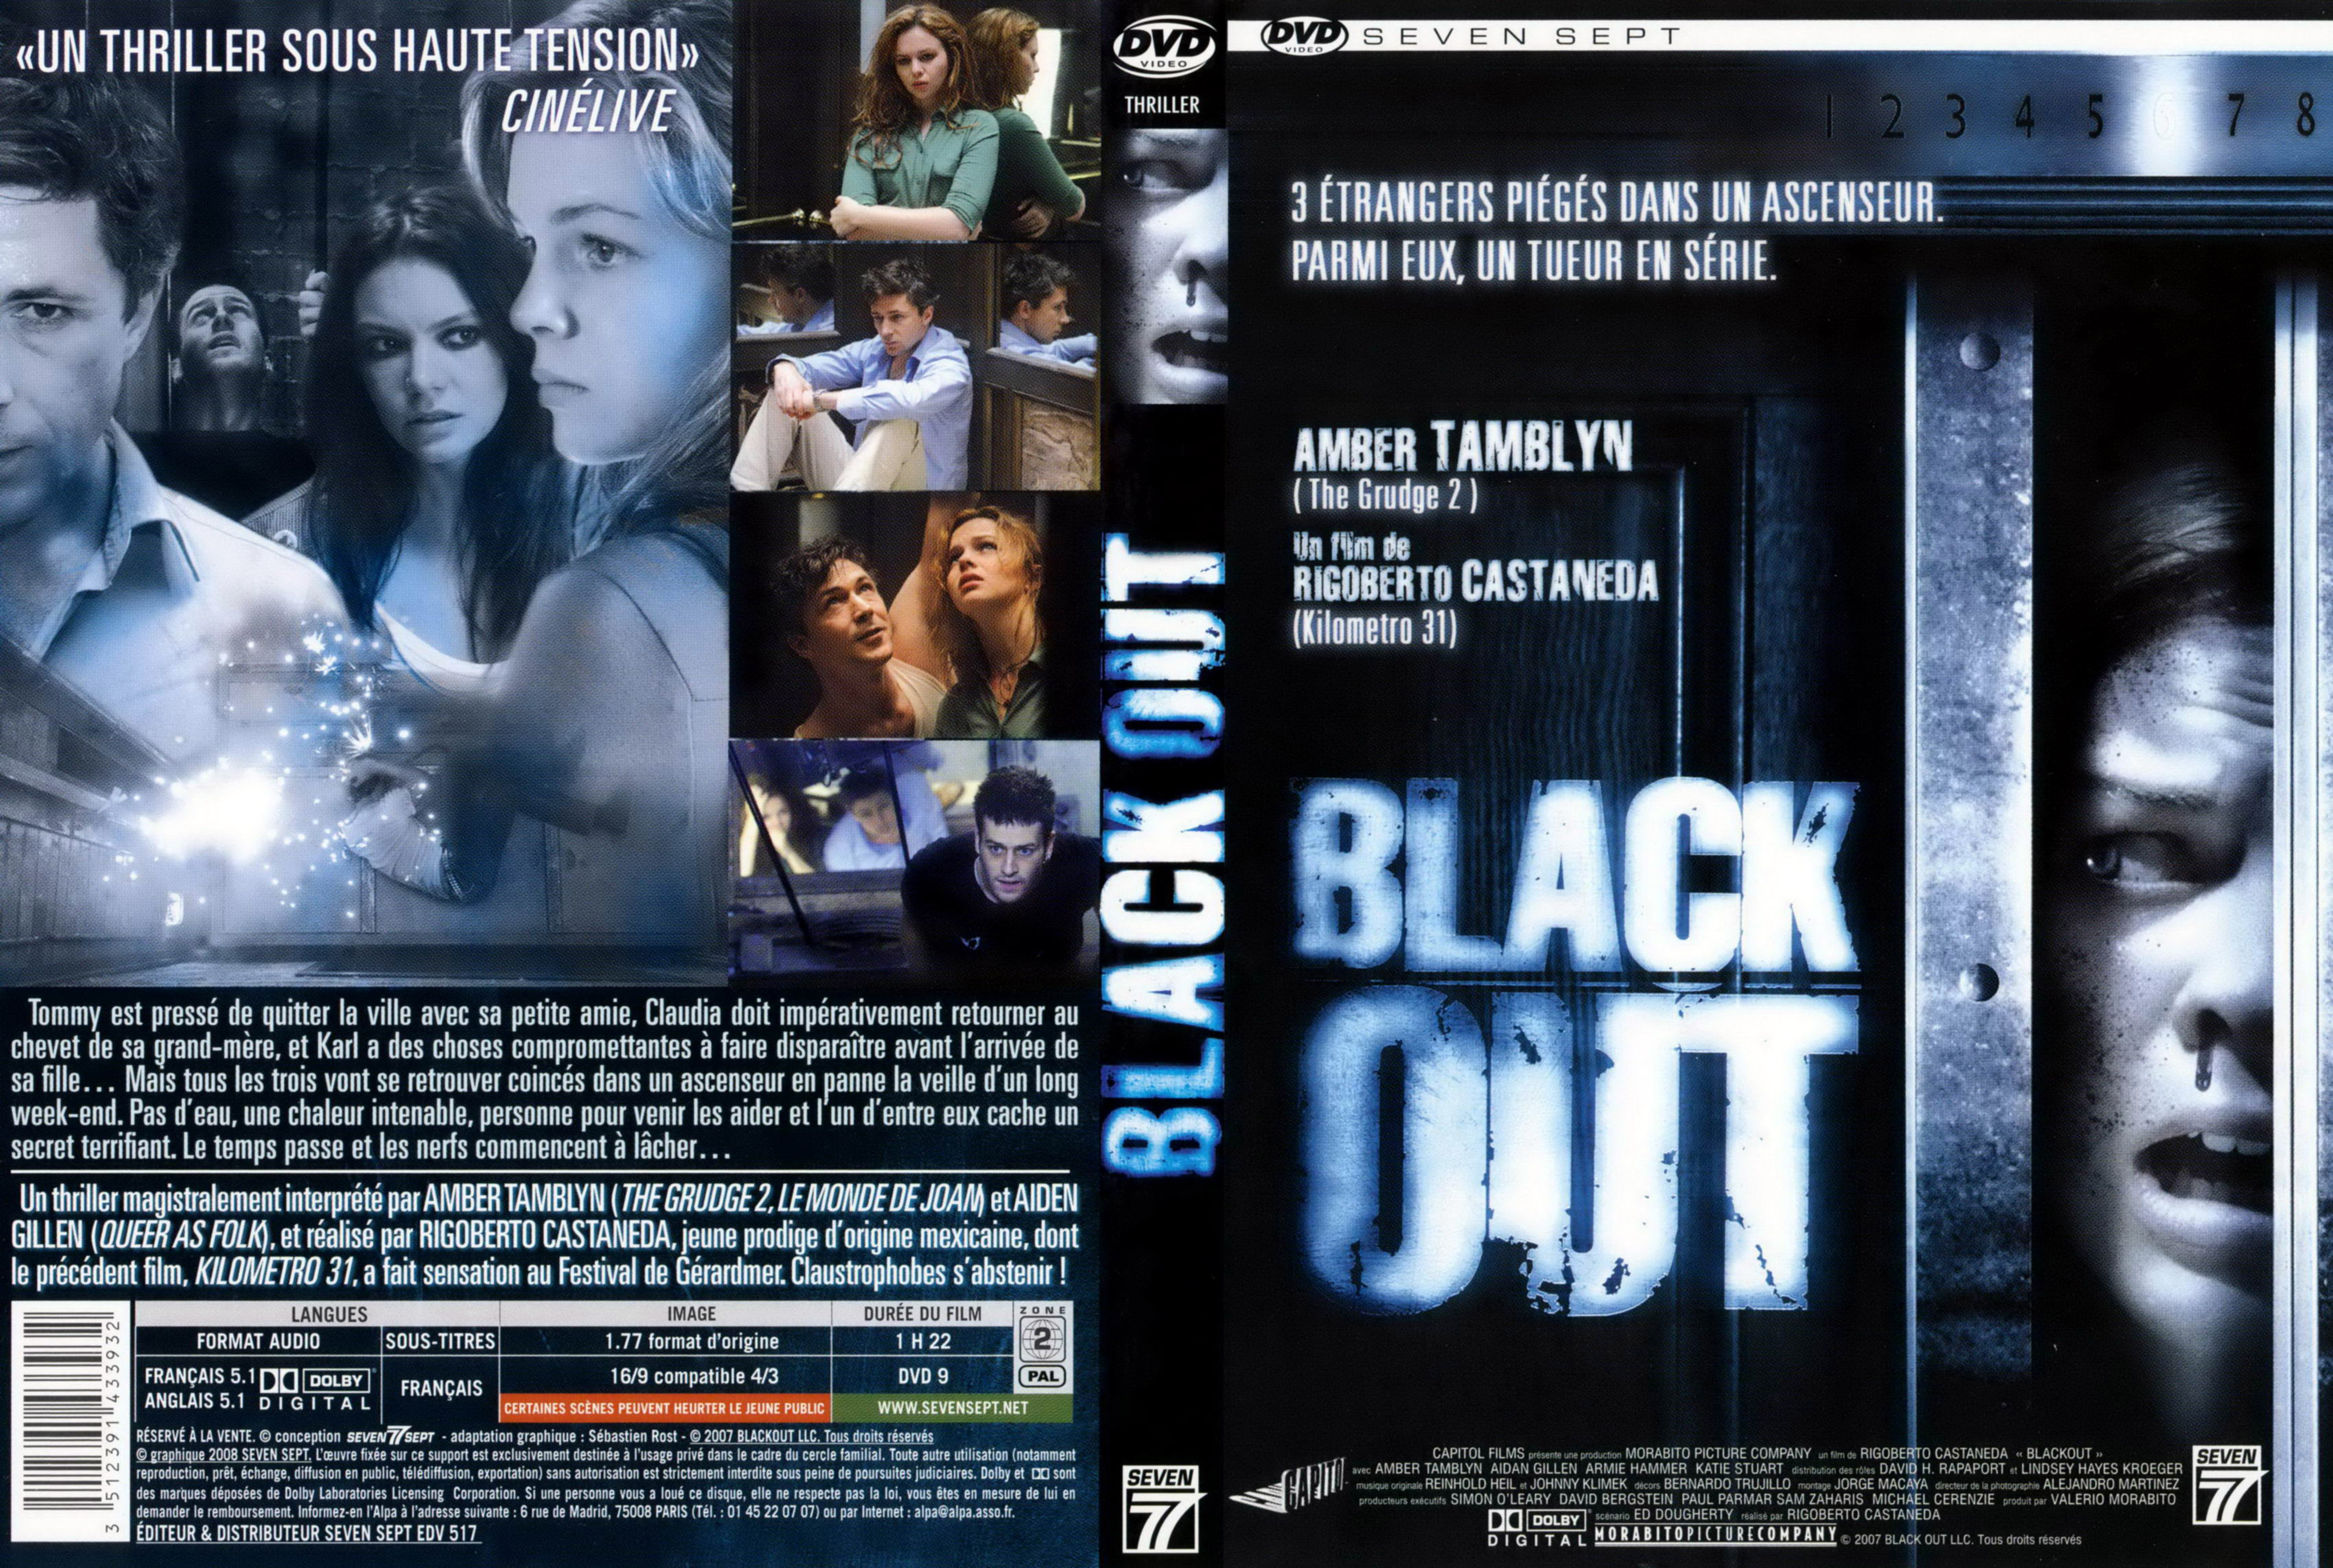 Jaquette DVD Black out v2